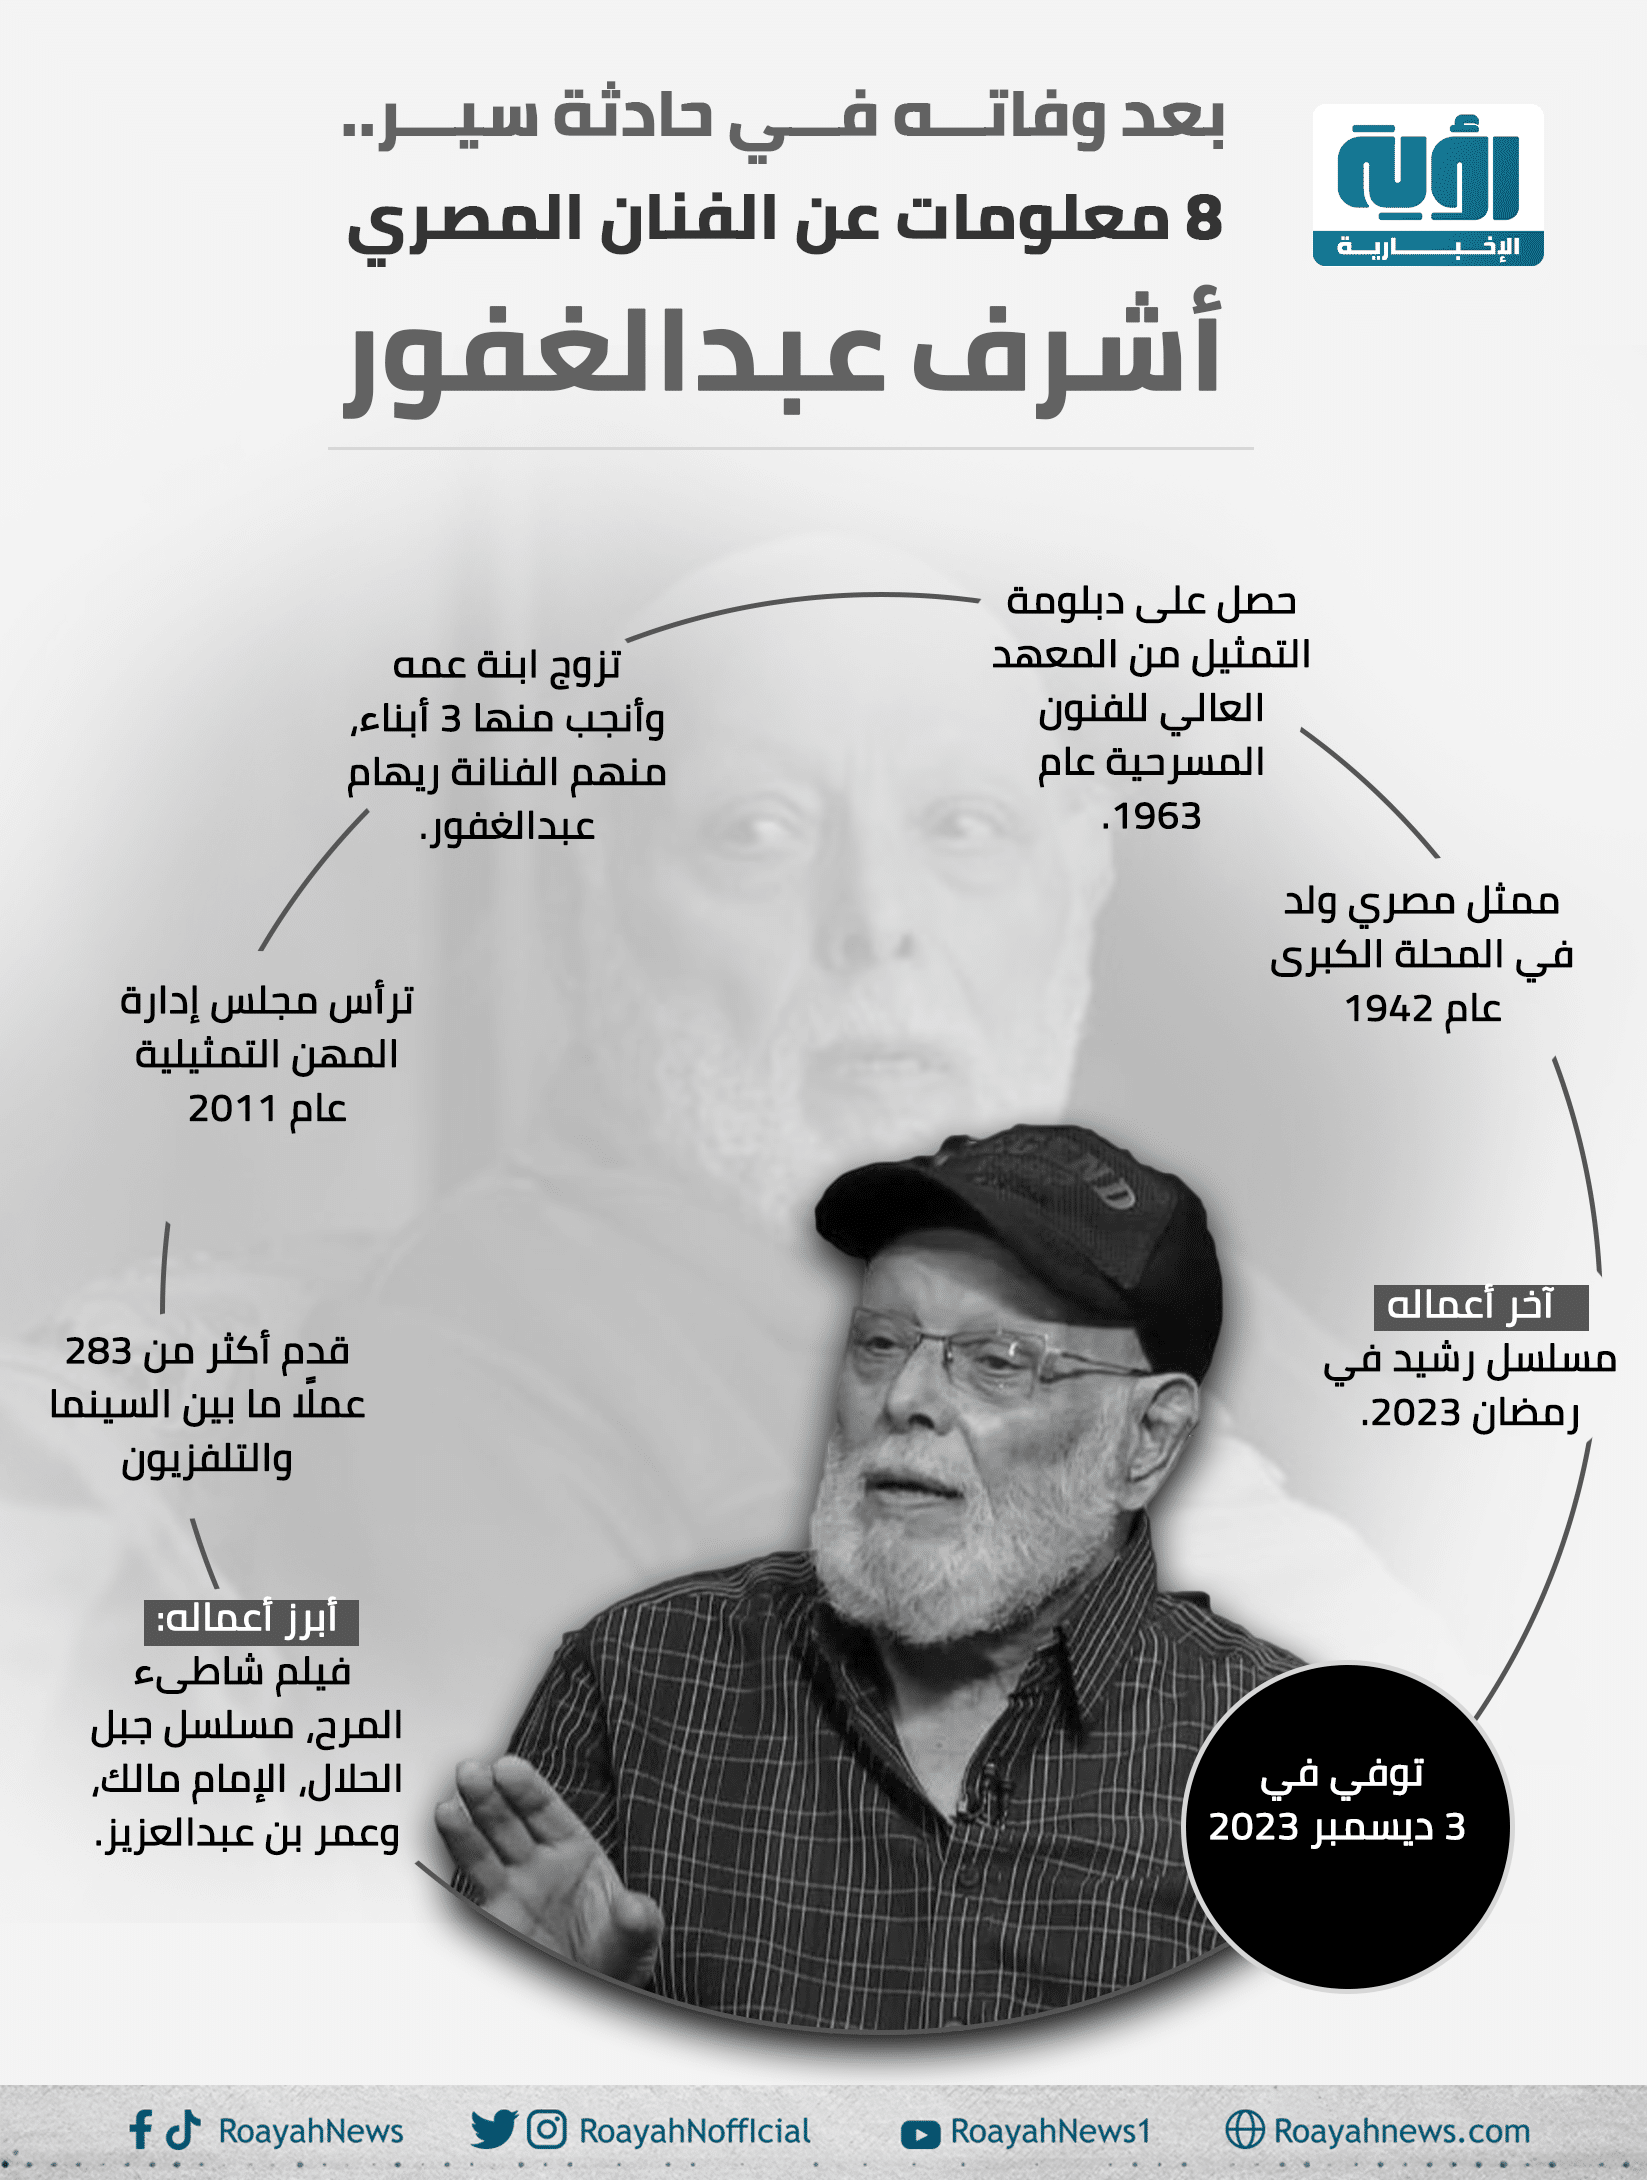 بعد وفاته في حادثة سير. 8 معلومات عن الفنان المصري أشرف عبدالغفور